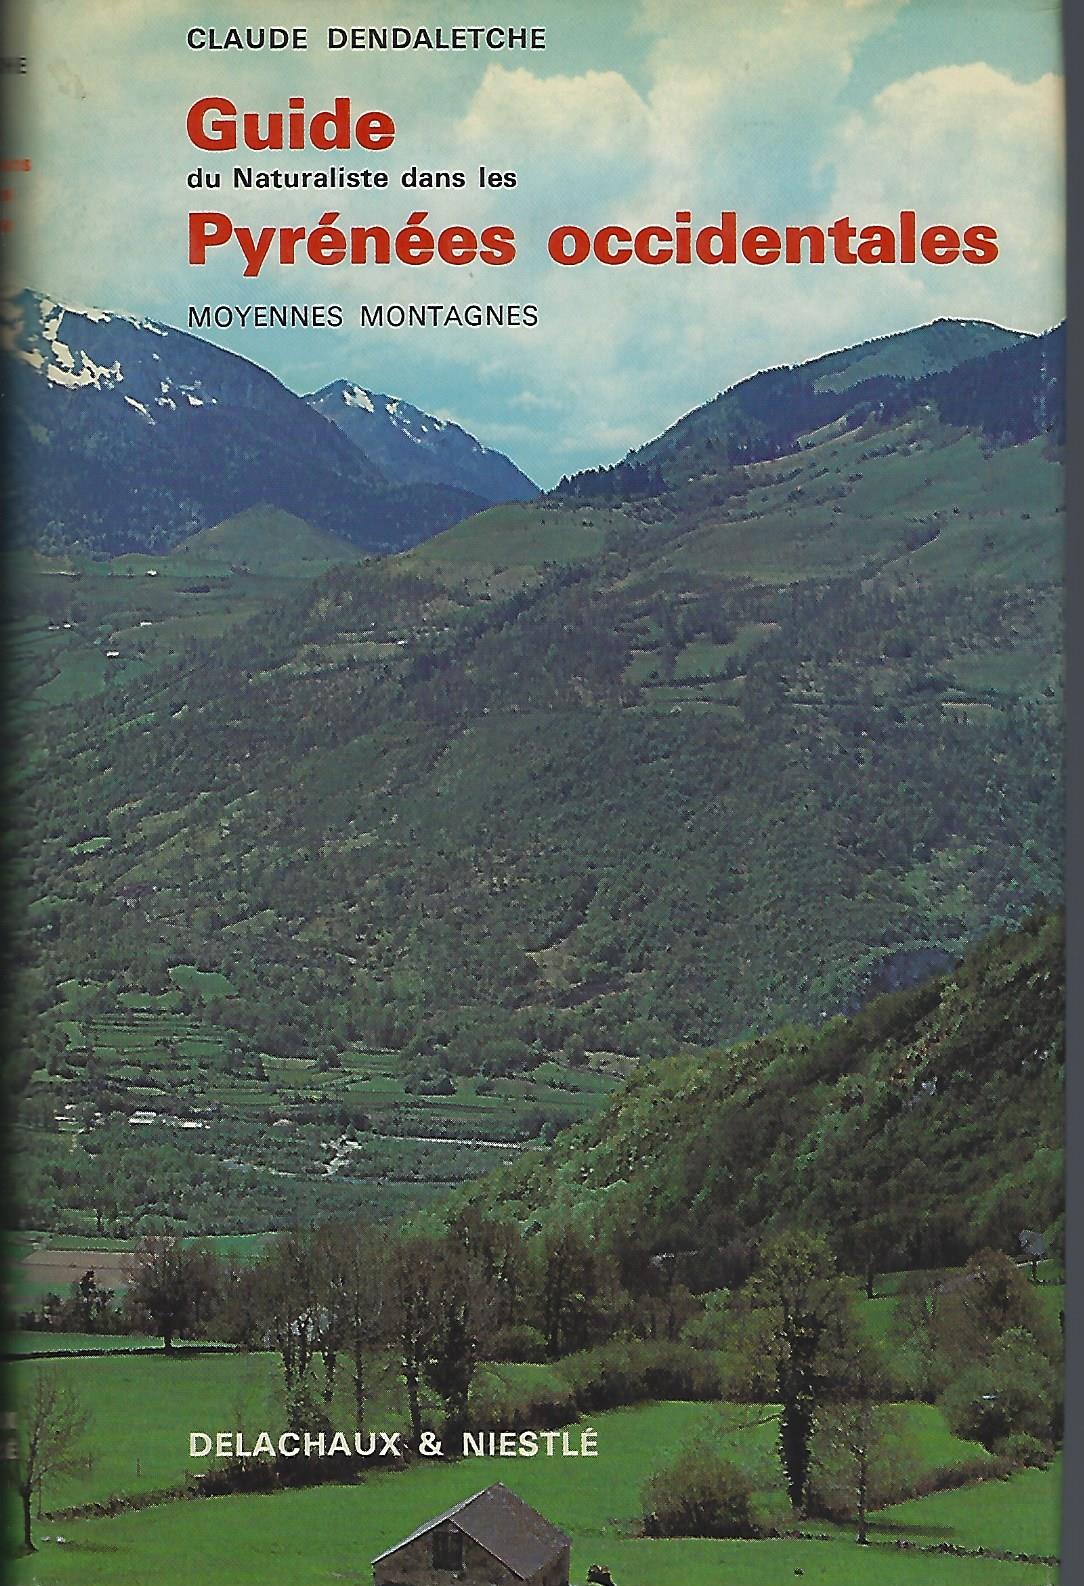 Image for Guide du Naturaliste dans les Pyrénées occidentales, Eléments de géologie, écologie et biologie pyrénéennes, Volume I. Moyennes montagnes